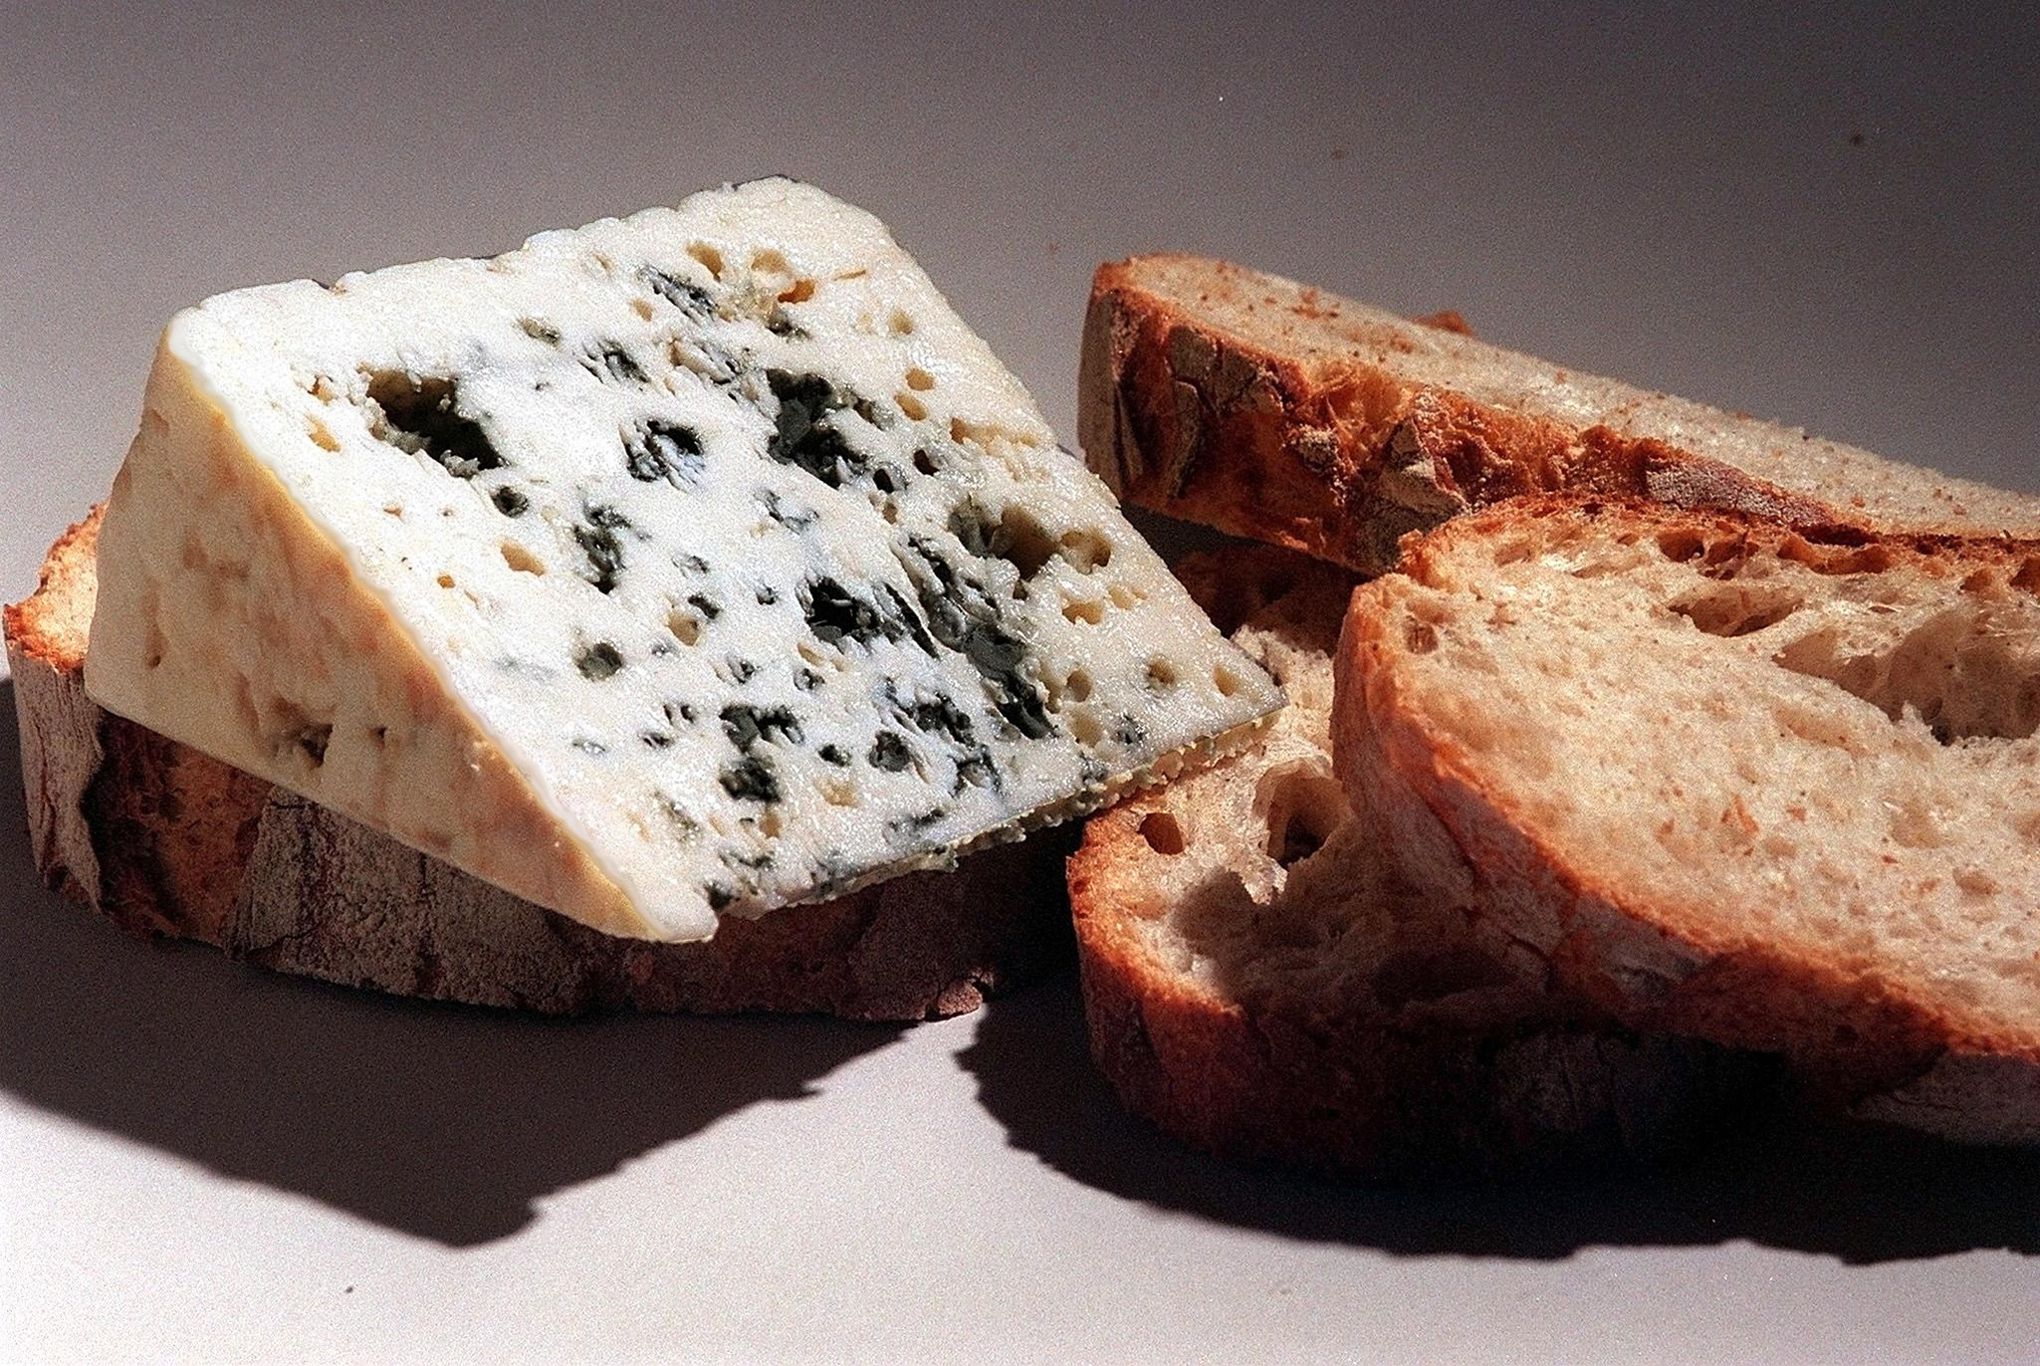 Petit suisse: infos, nutrition, saveurs et qualité du fromage